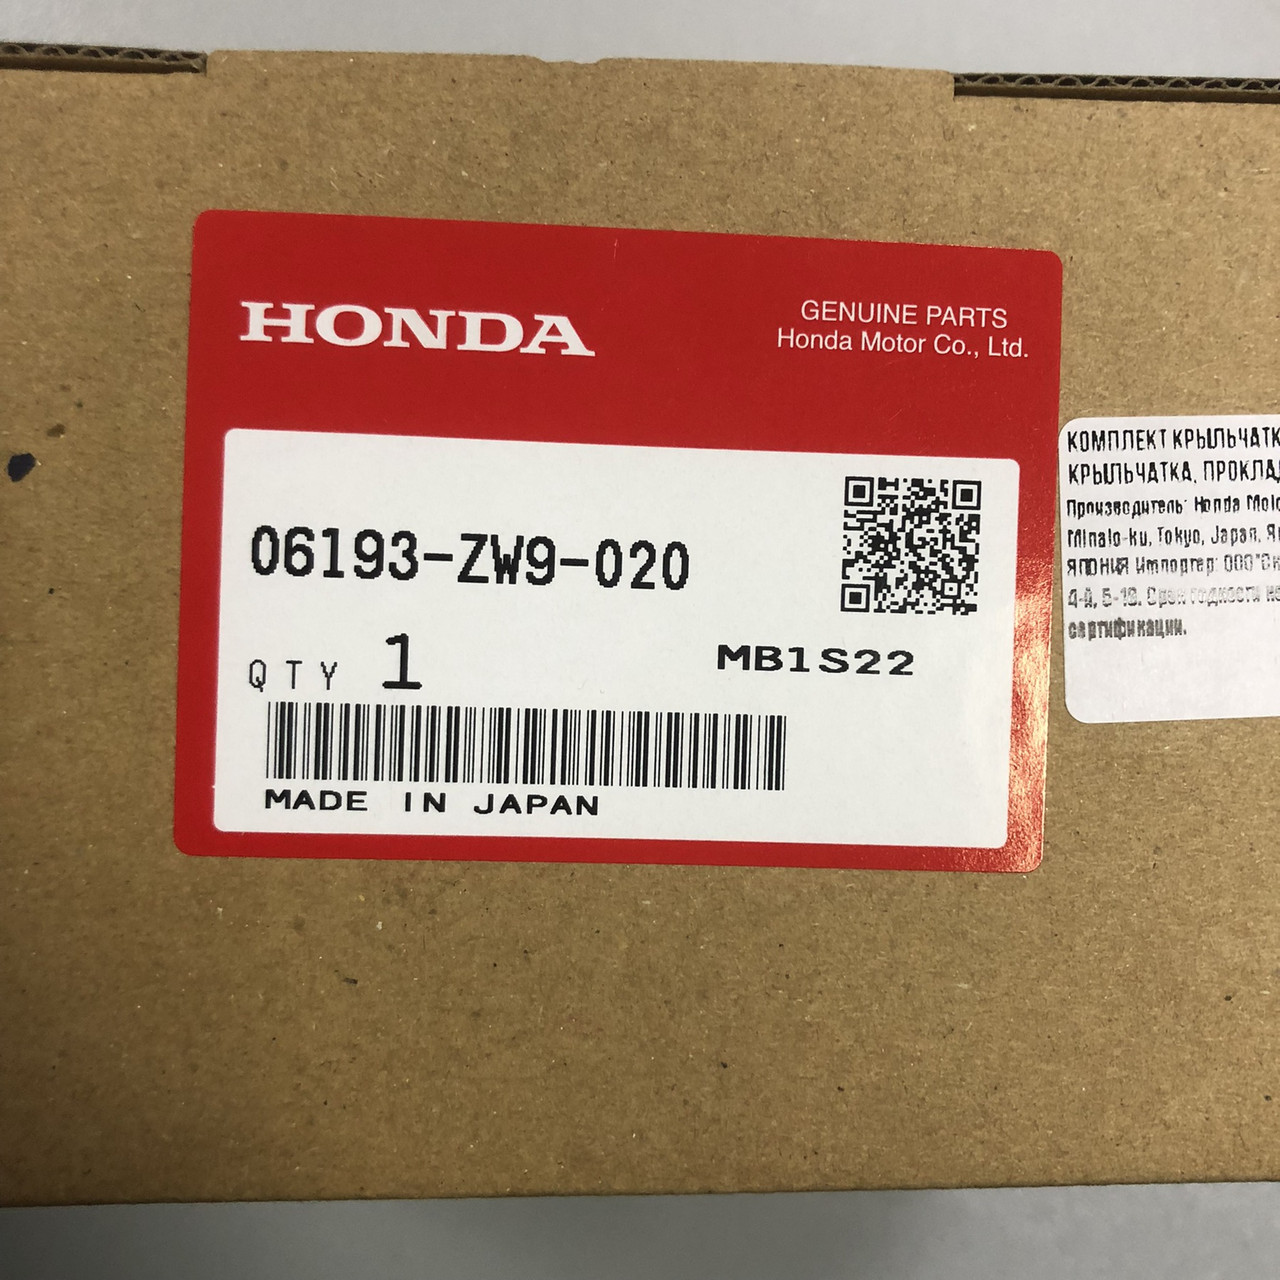 Комплект крыльчатки Honda BF10 (корпус, крыльчатка, прокладки) 06193-ZW9-020